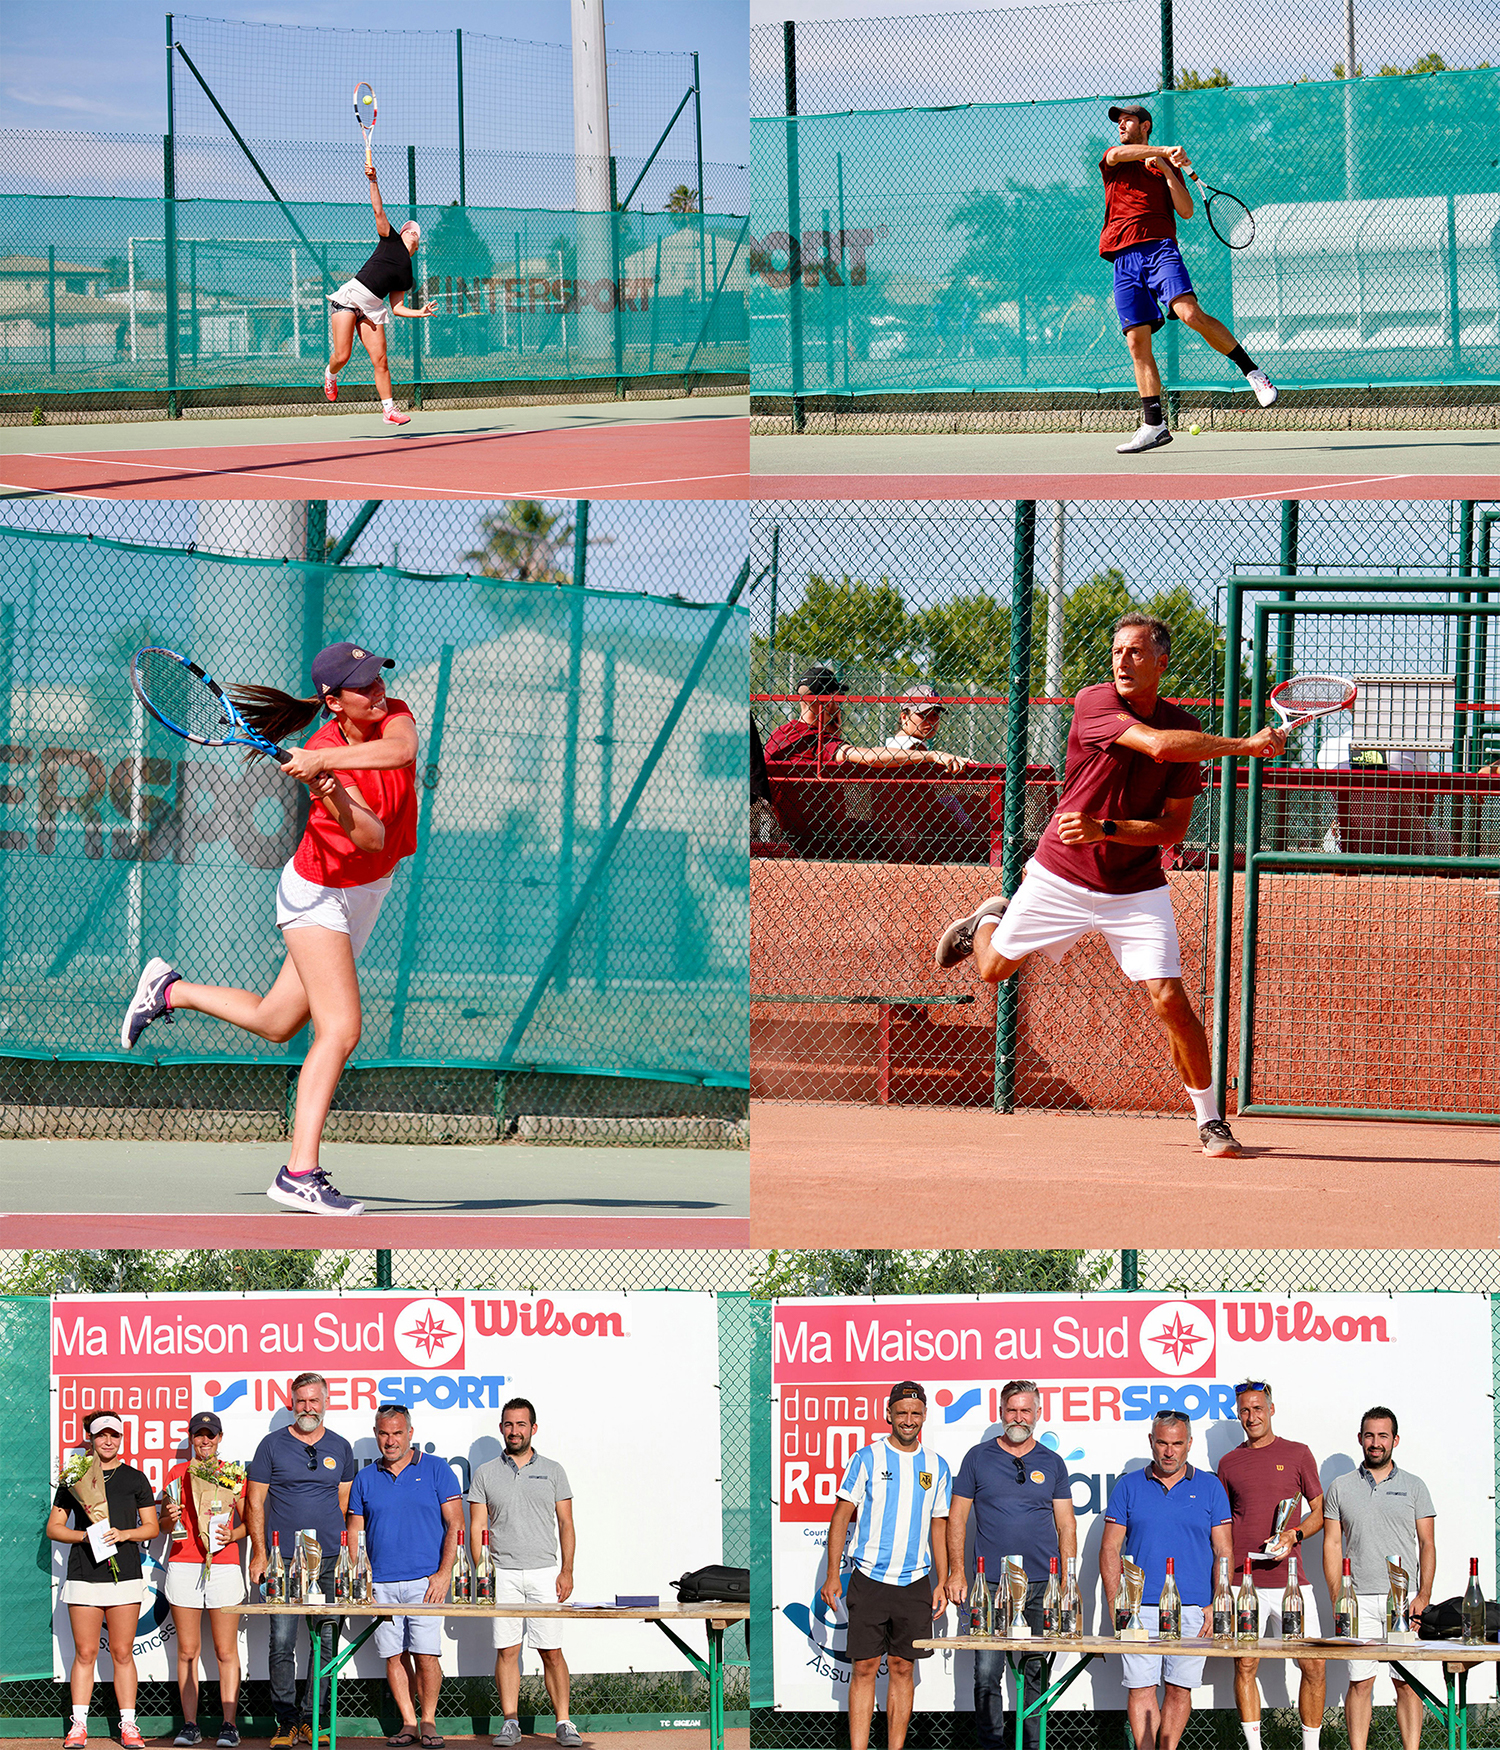 montage_tennis_tournoi_2021.jpg